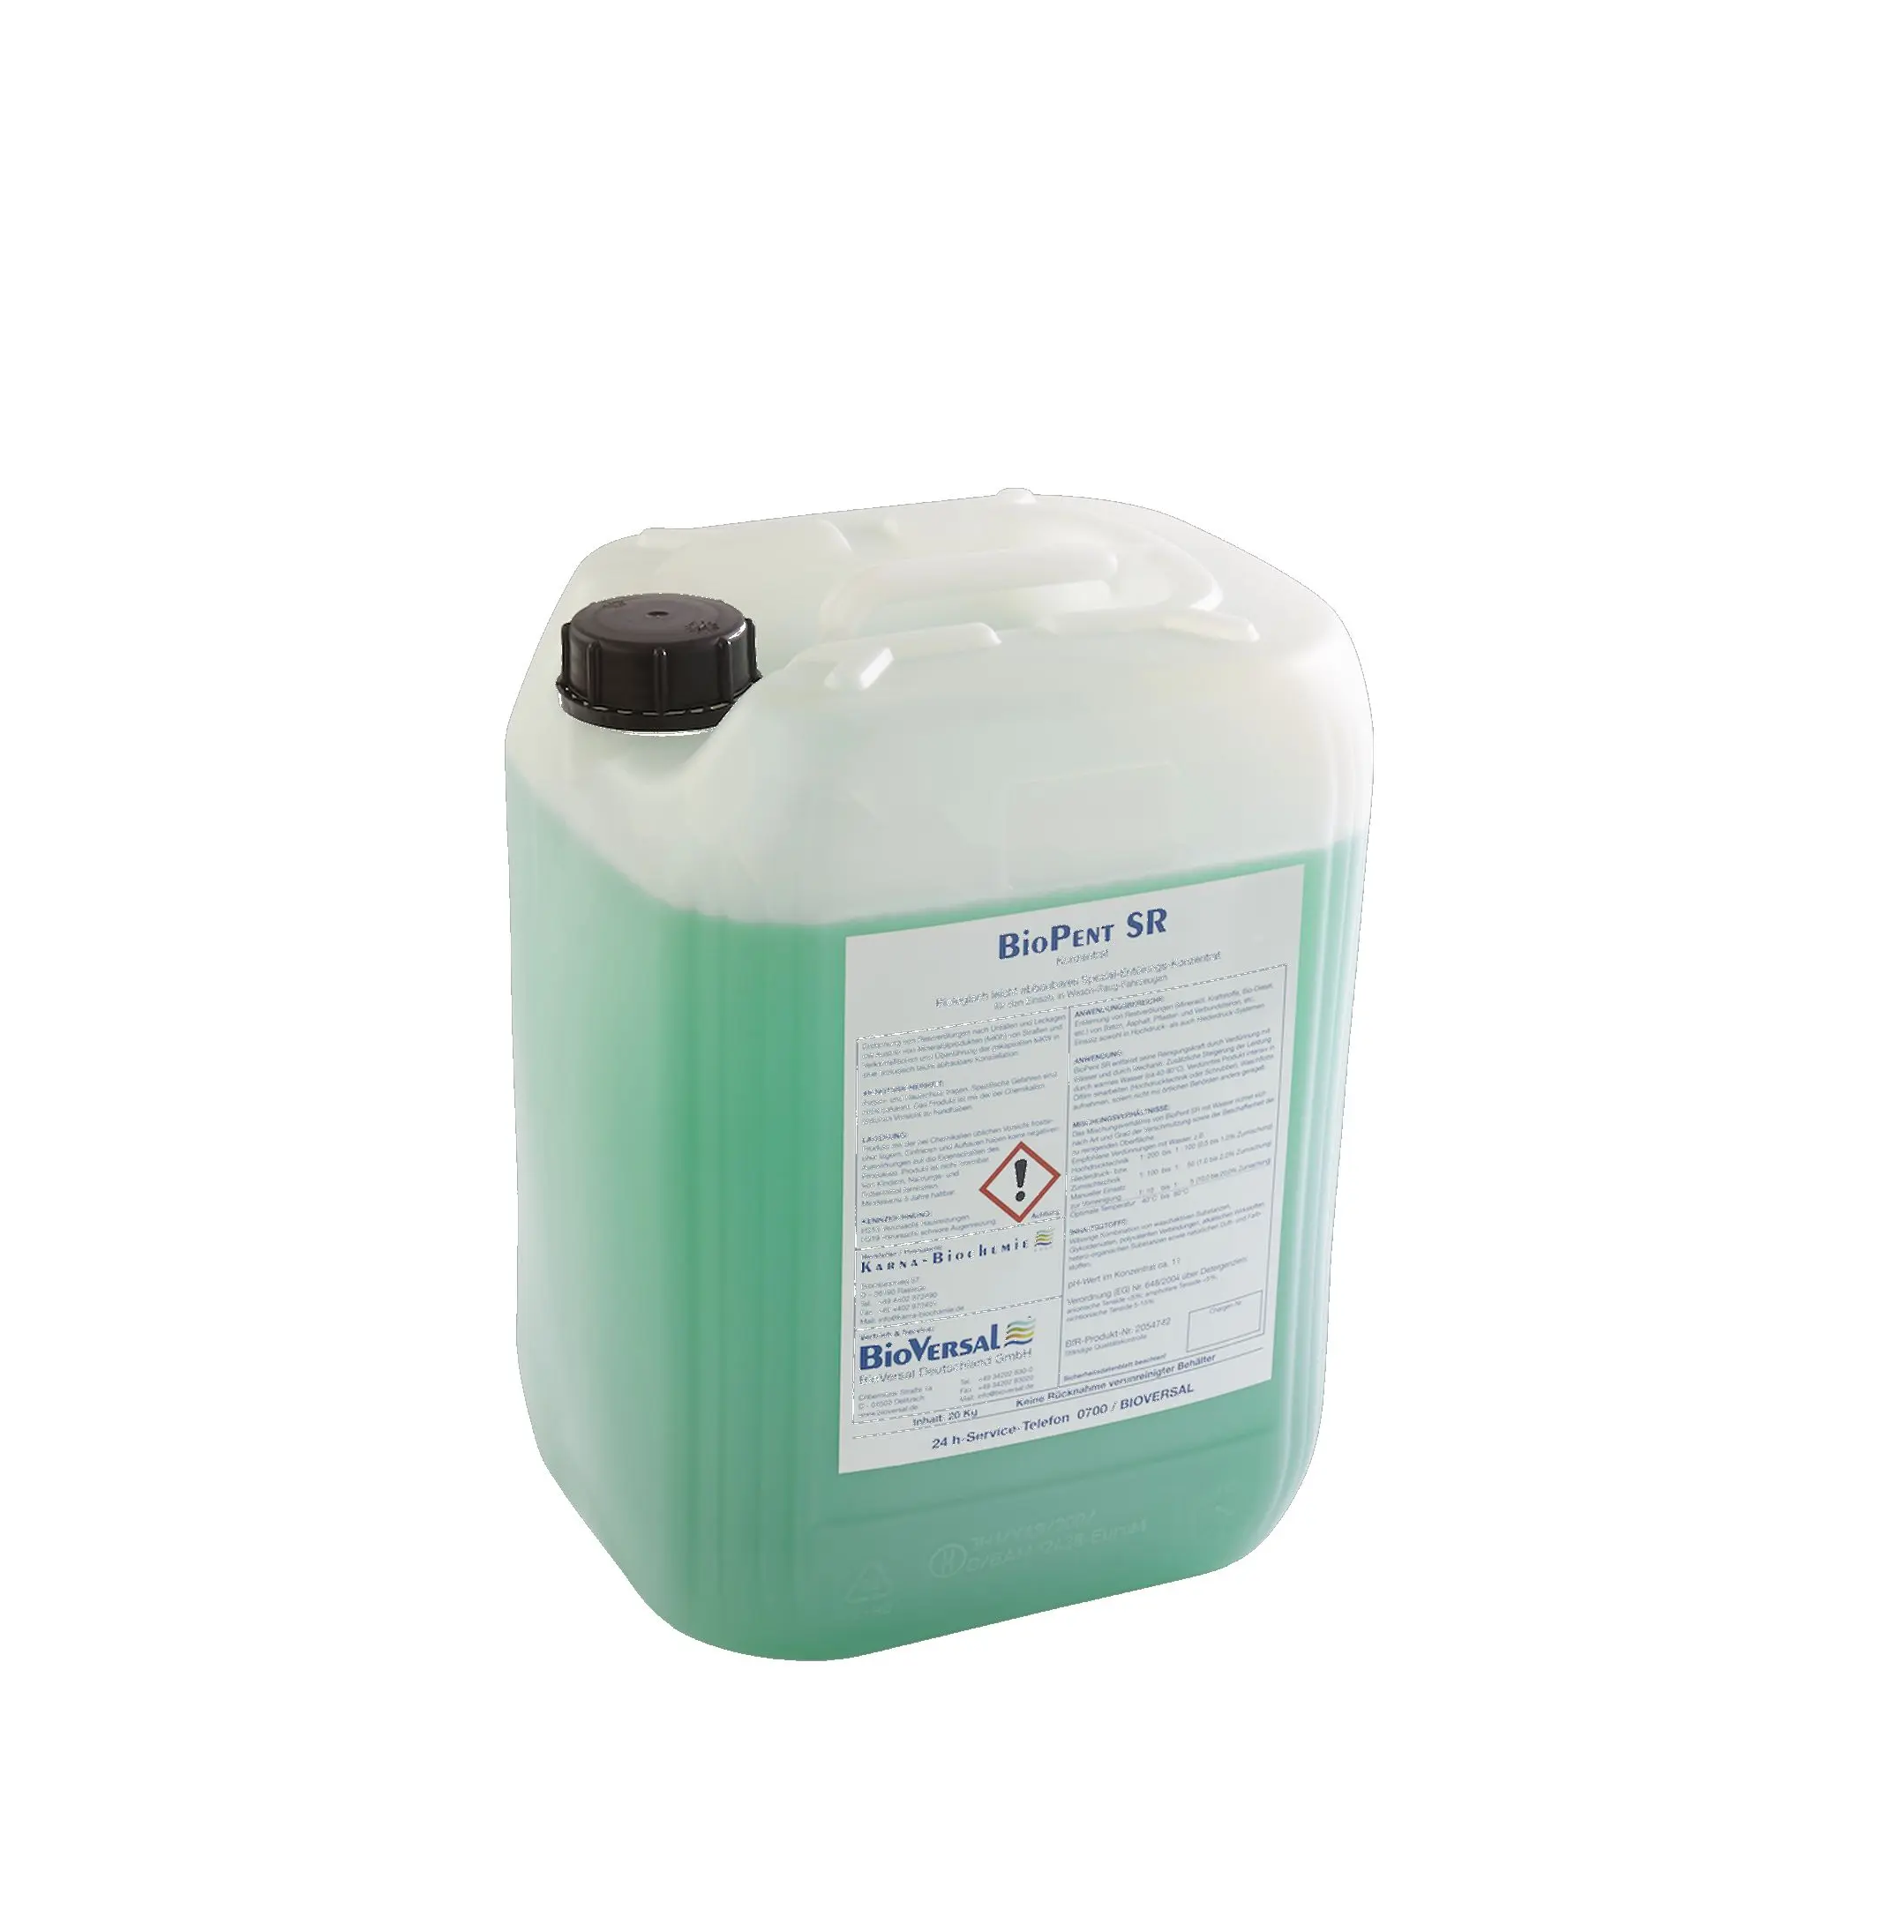 Umweltgerechtes Ölspuren-Beseitigungsmittel, BioPent SR, 20kg